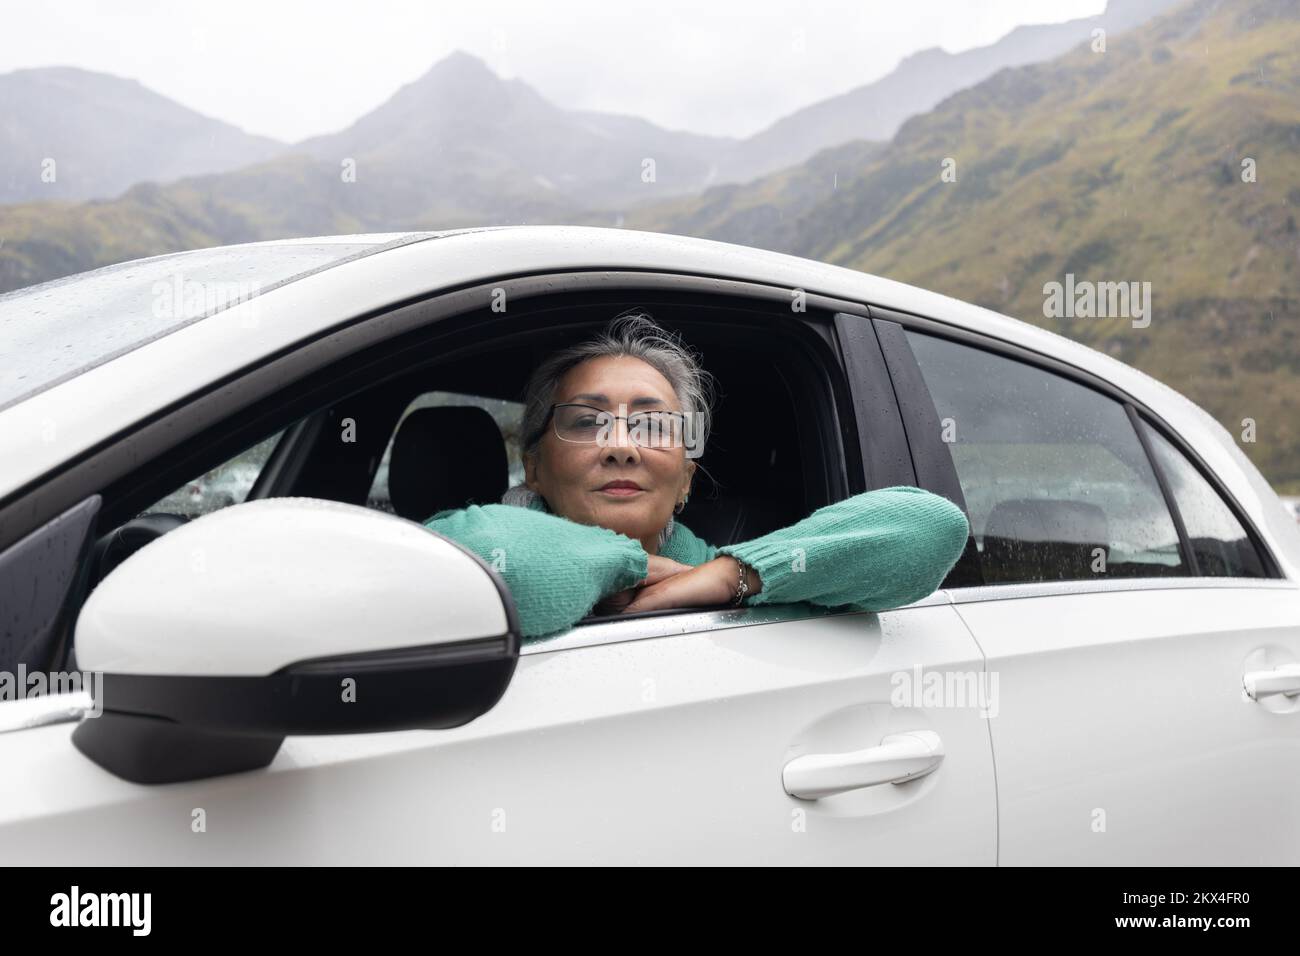 Une femme aux cheveux gris dans une voiture dans le siège du conducteur sur fond de montagnes alpines Banque D'Images